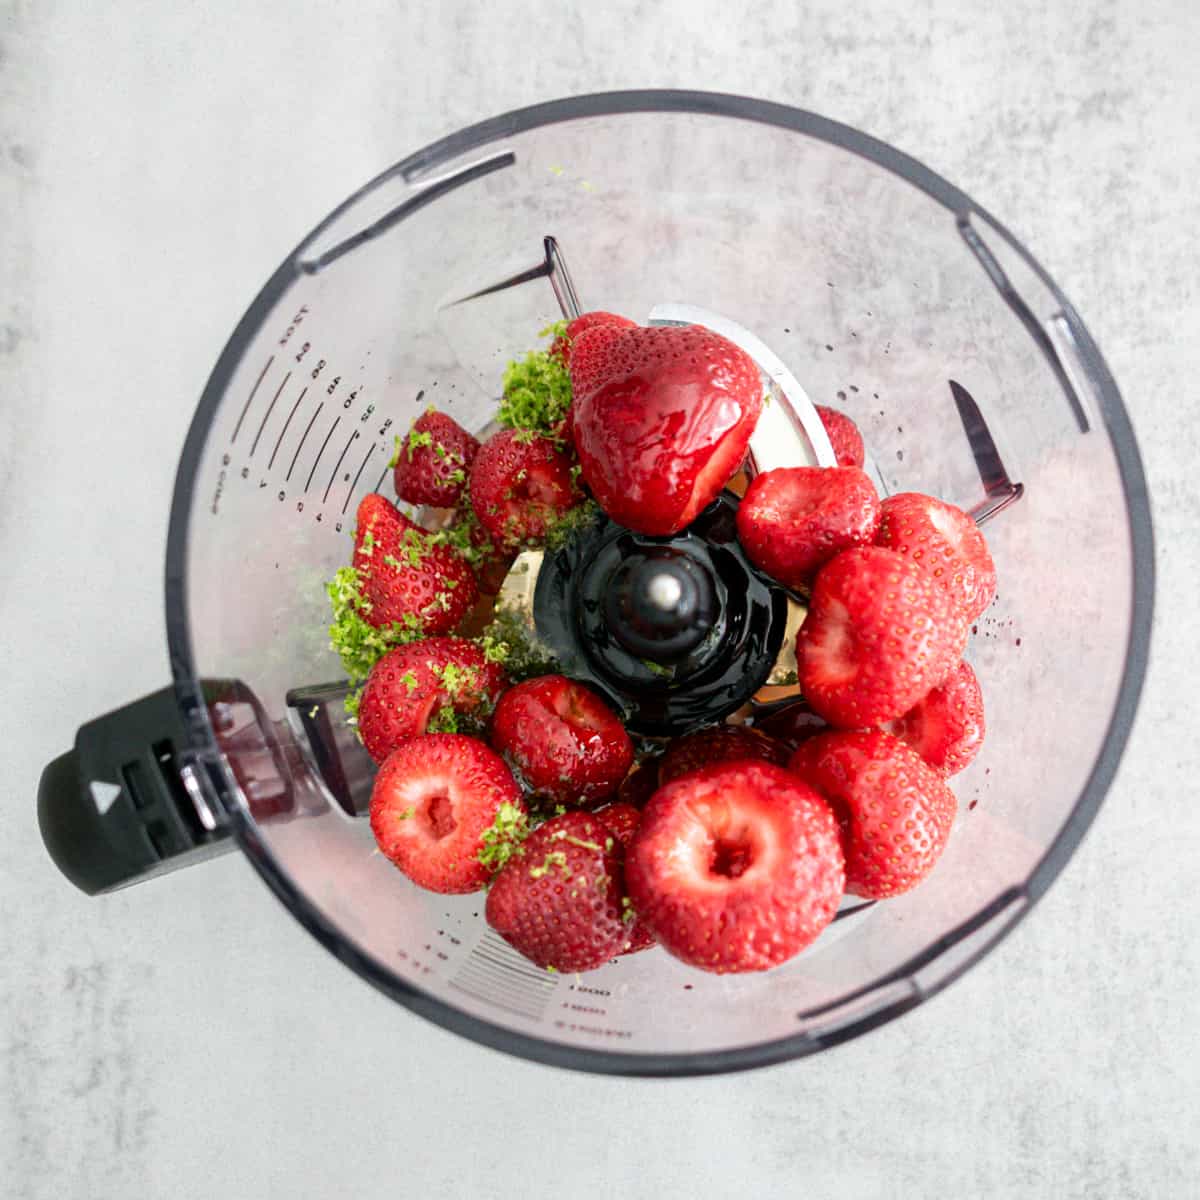 Easy Homemade Strawberry Vinaigrette Salad Dressing